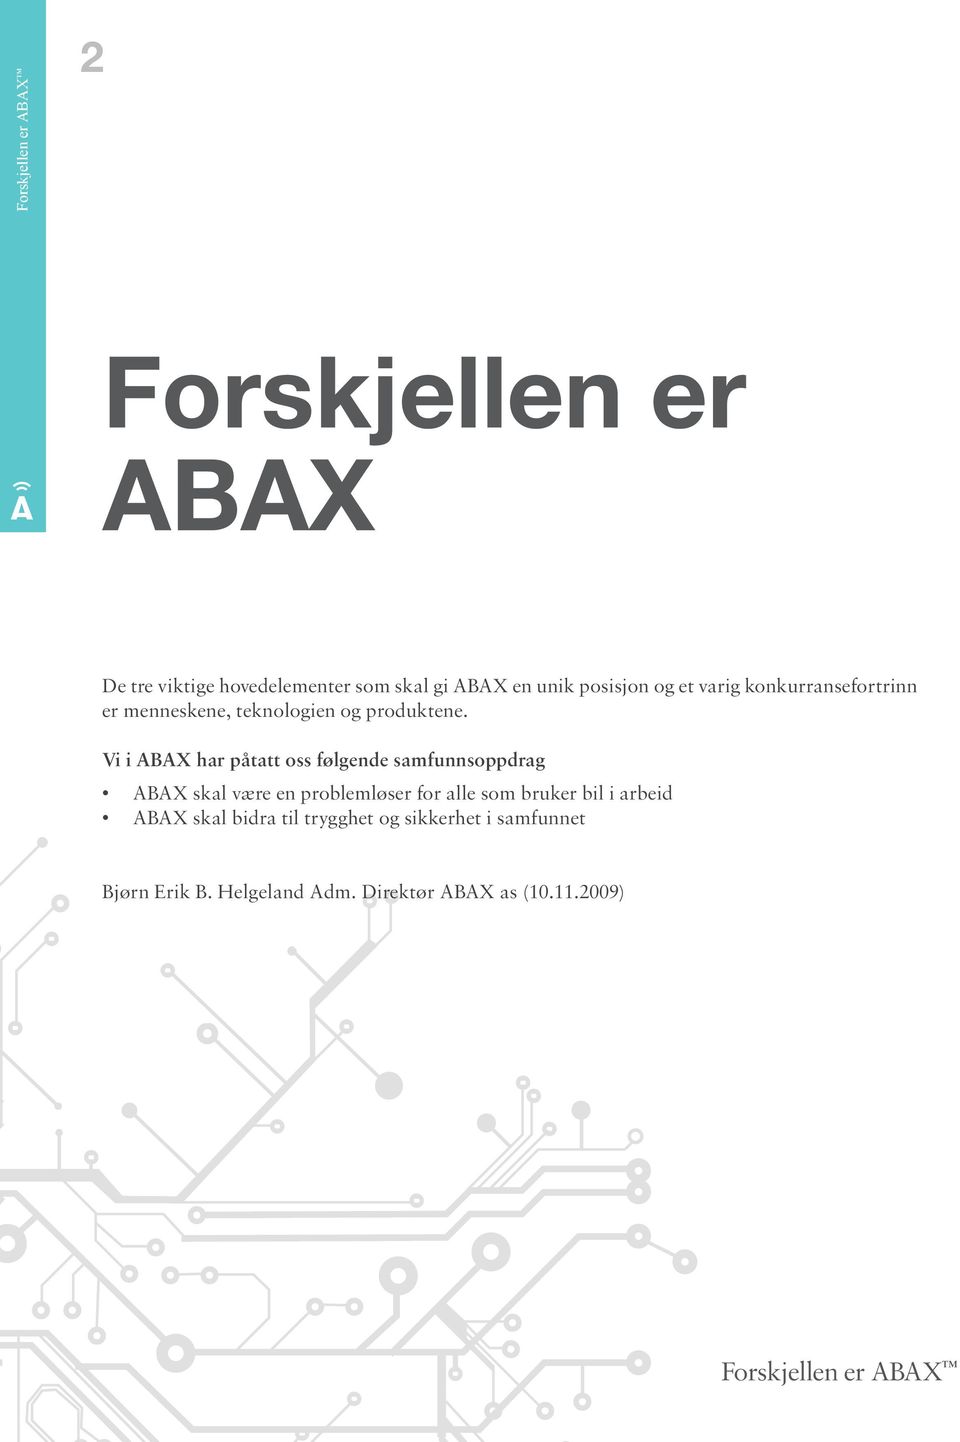 Vi i ABAX har påtatt oss følgende samfunnsoppdrag ABAX skal være en problemløser for alle som bruker bil i